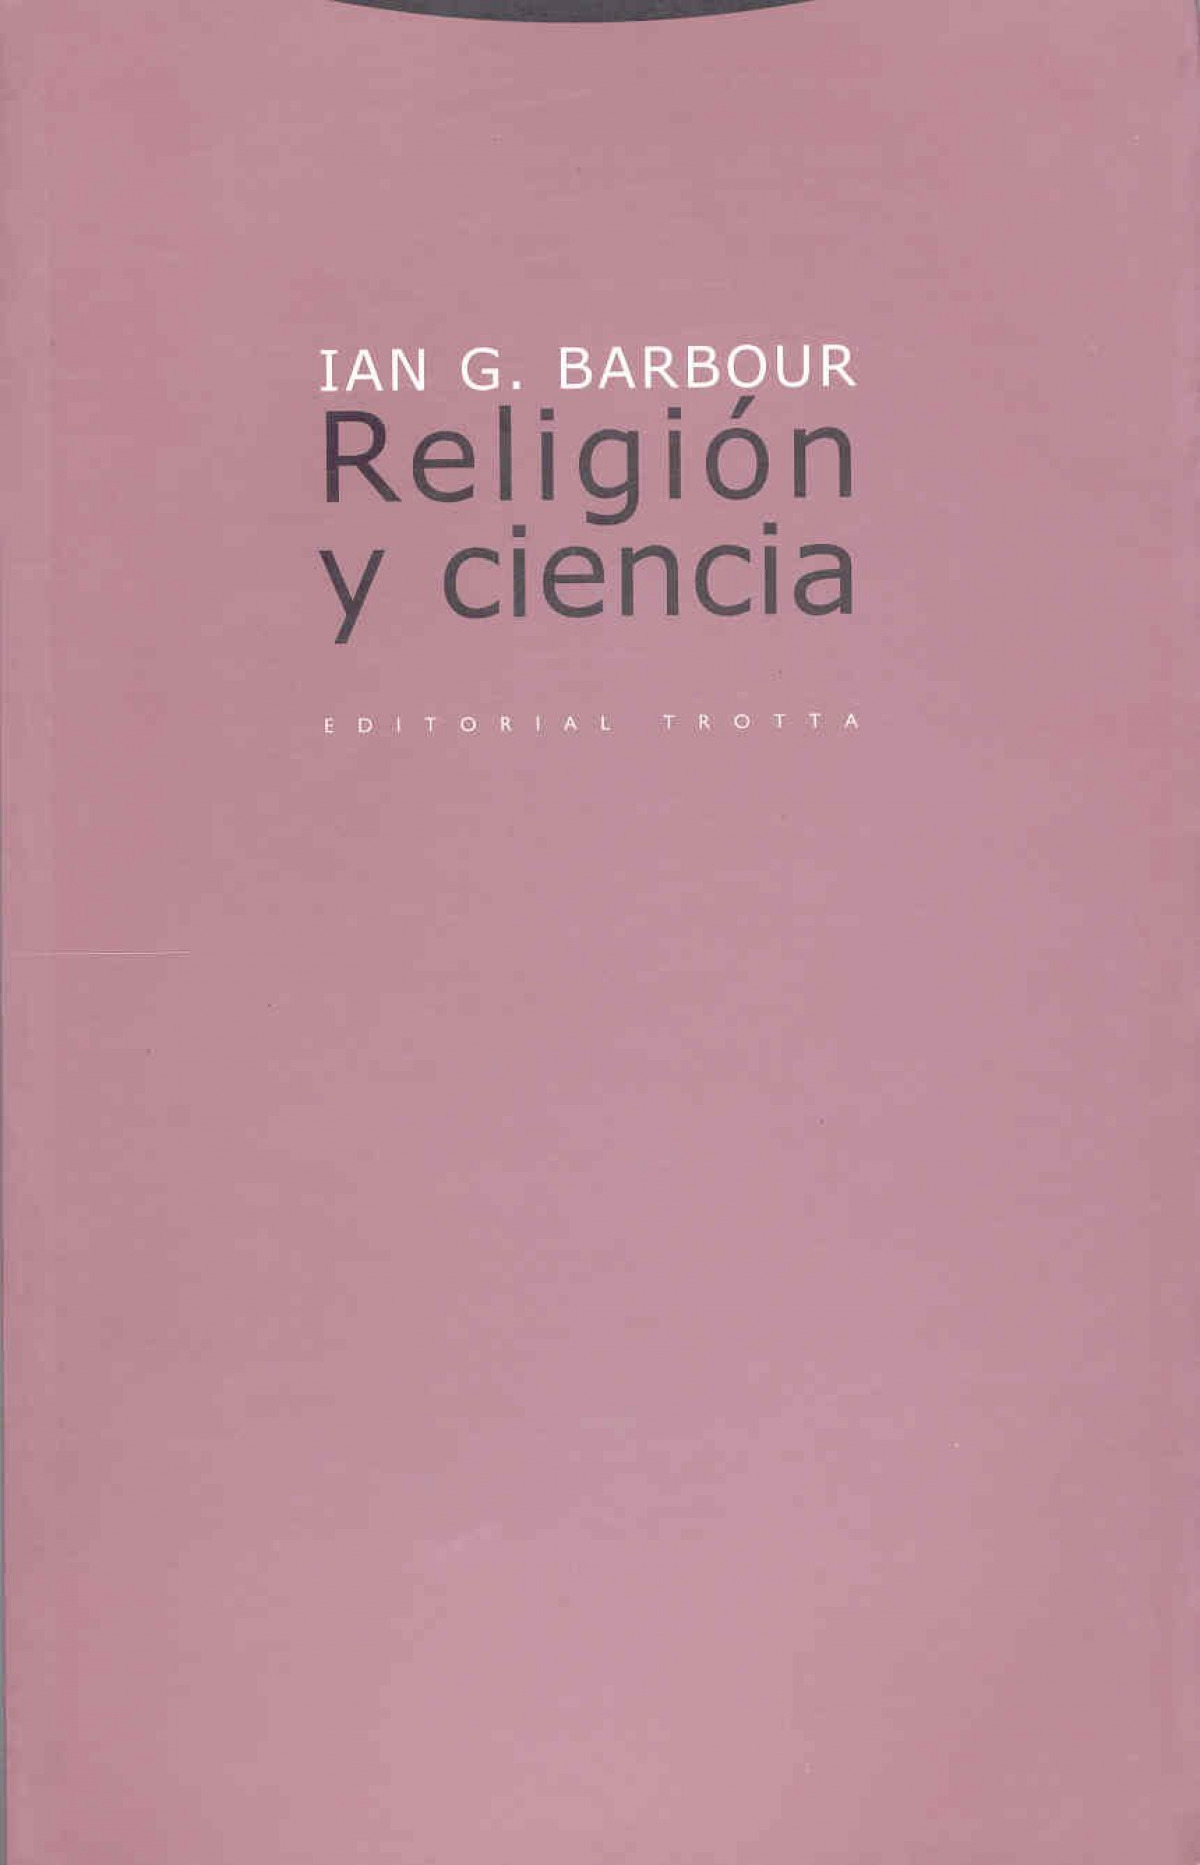 Religion y ciencia - Barbour, Ian G.